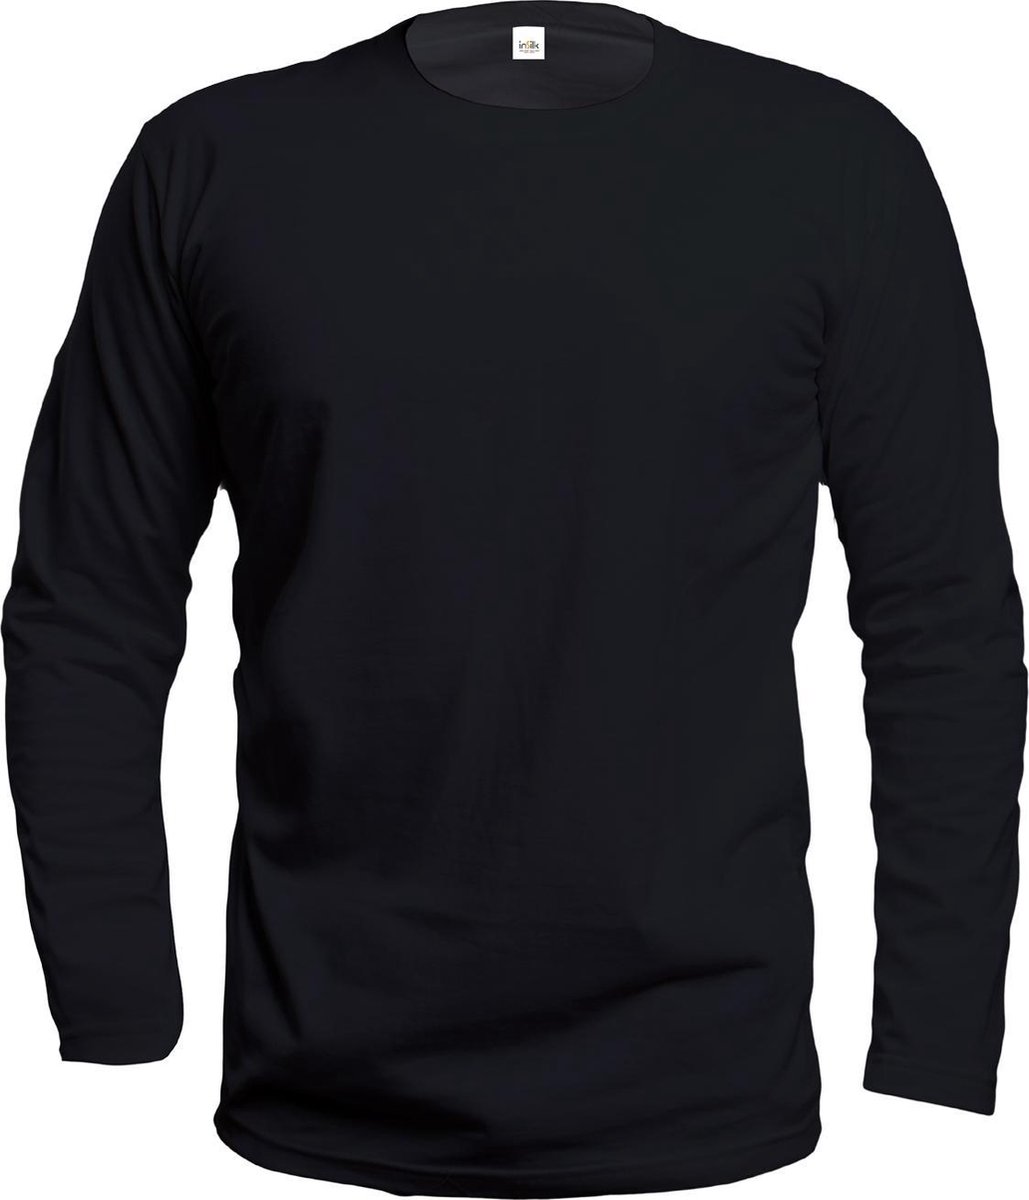 Zijden Heren Shirt Lange Mouw Zwart Large - 100% Zijde